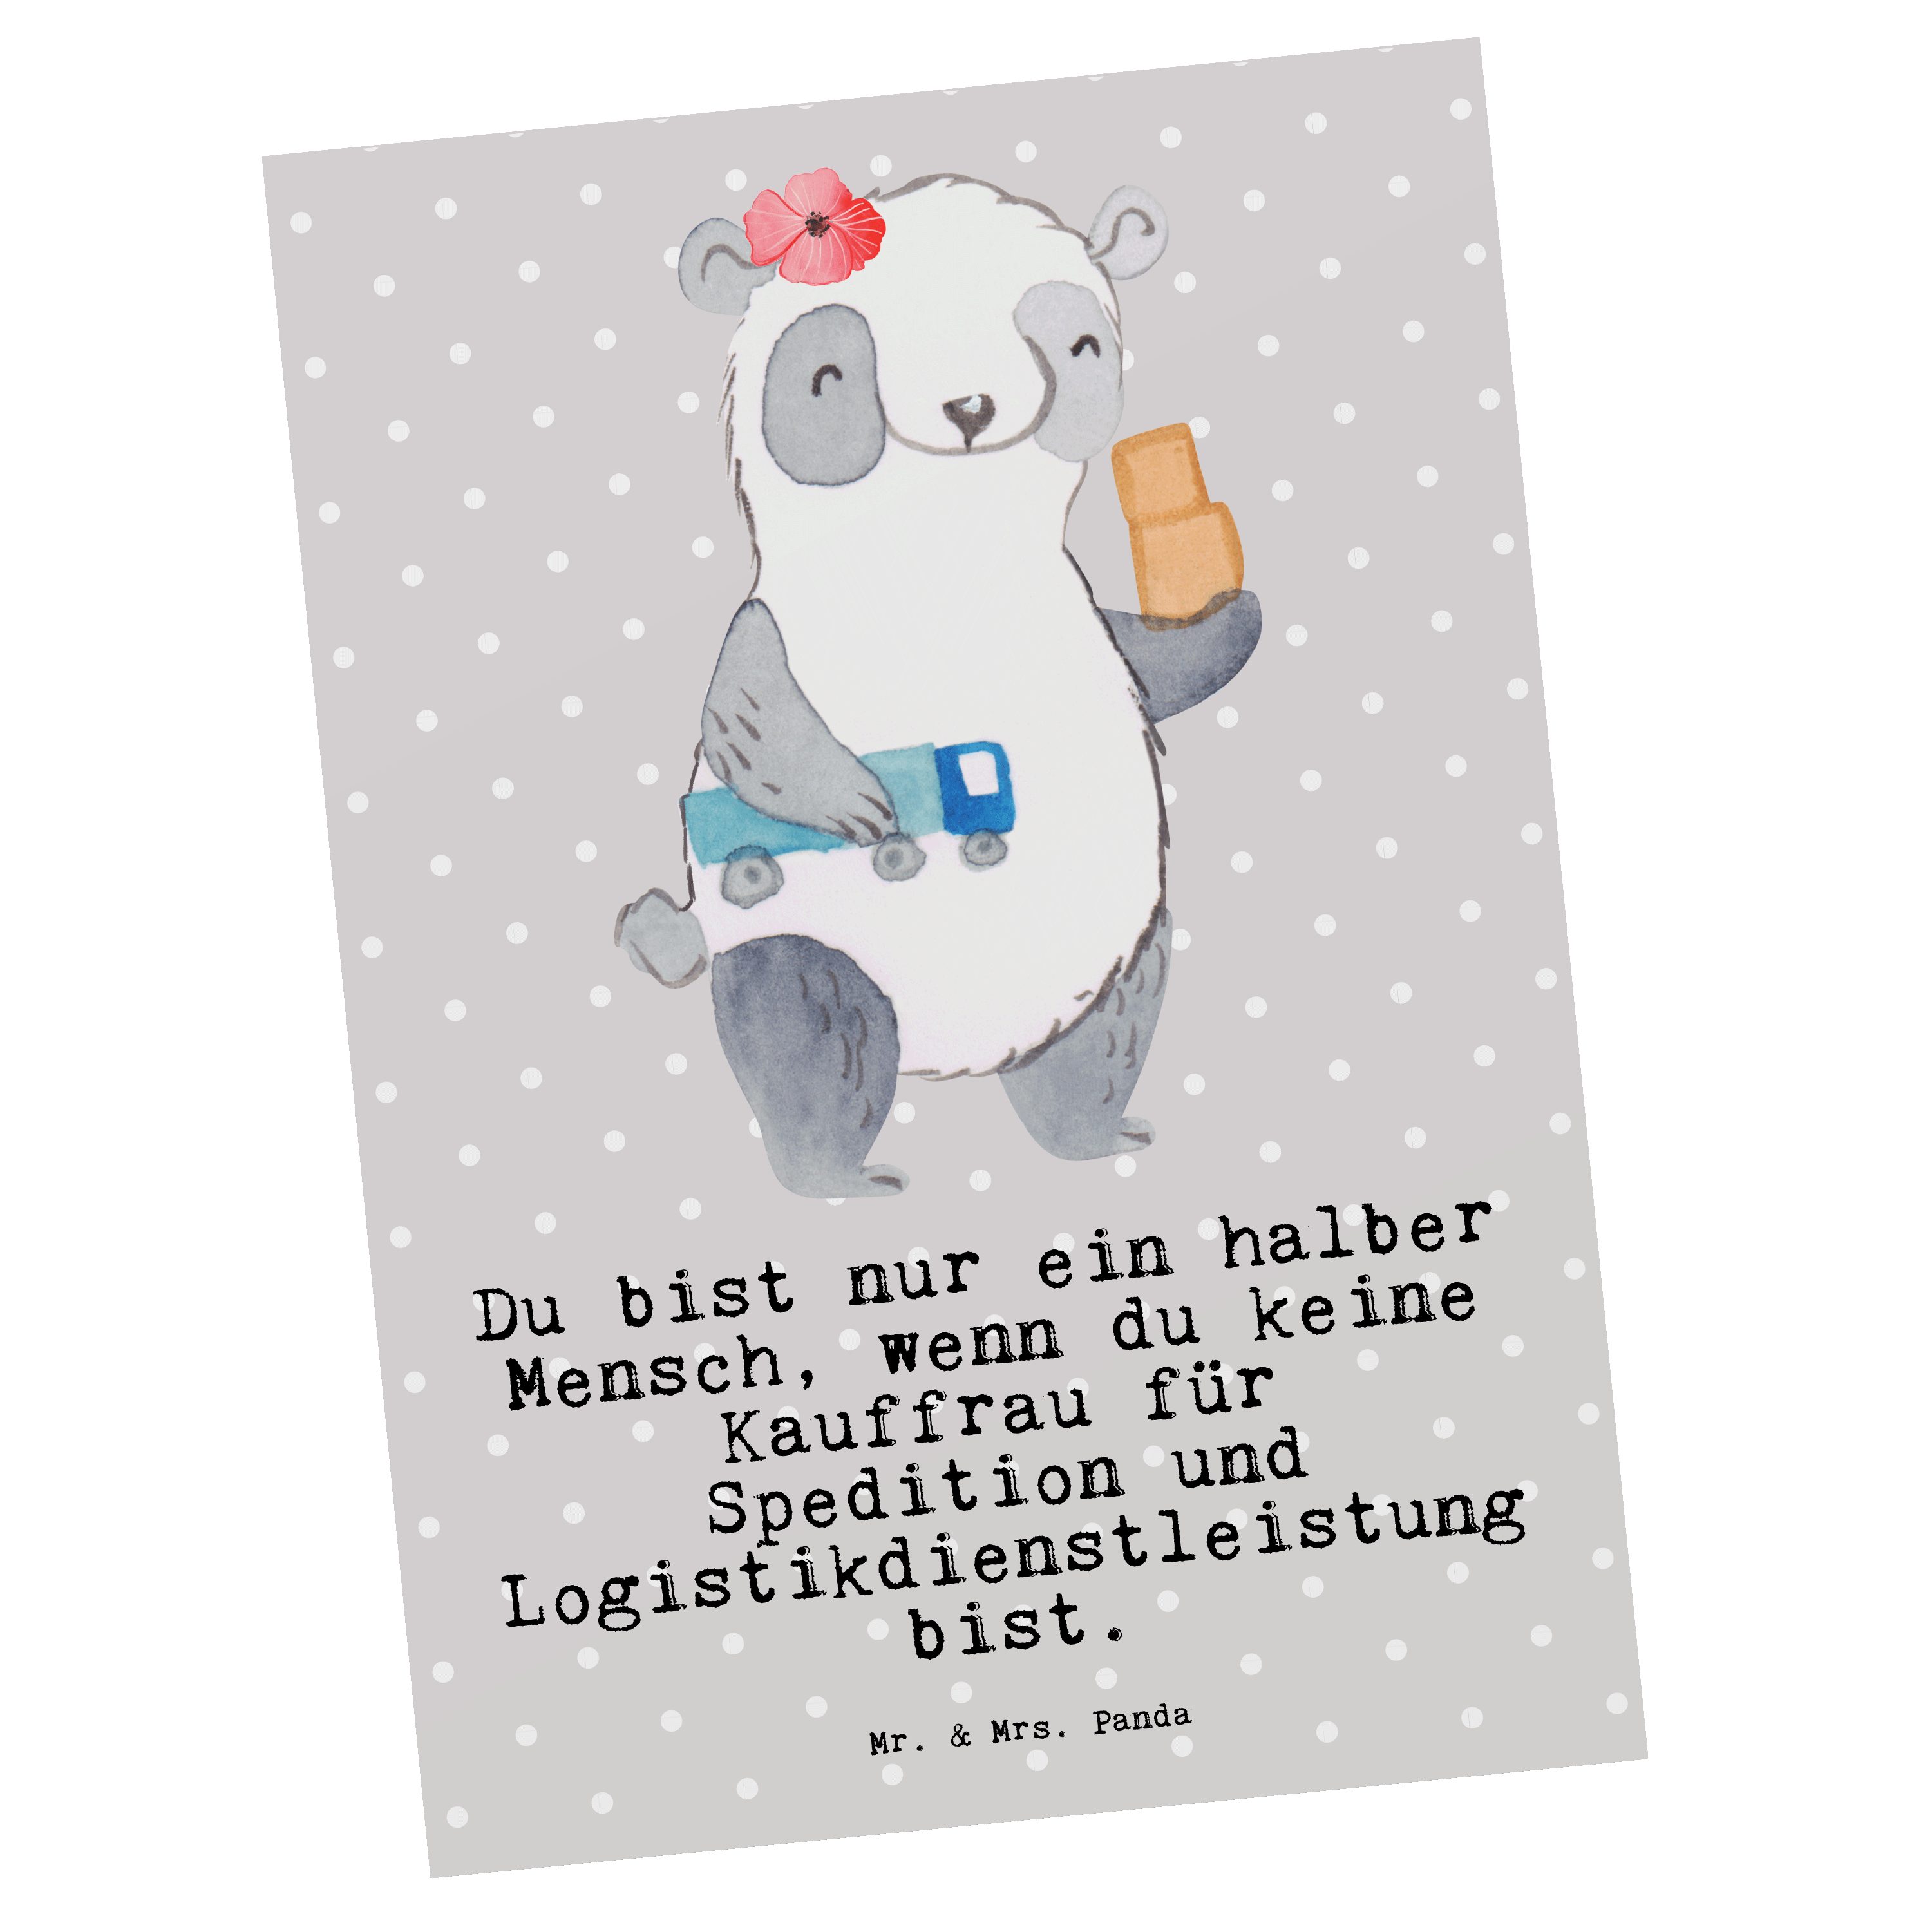 Mr. & Mrs. Panda Postkarte Kauffrau für Spedition und Logistikdienstleistung mit Herz - Grau Pas Grau Pastell